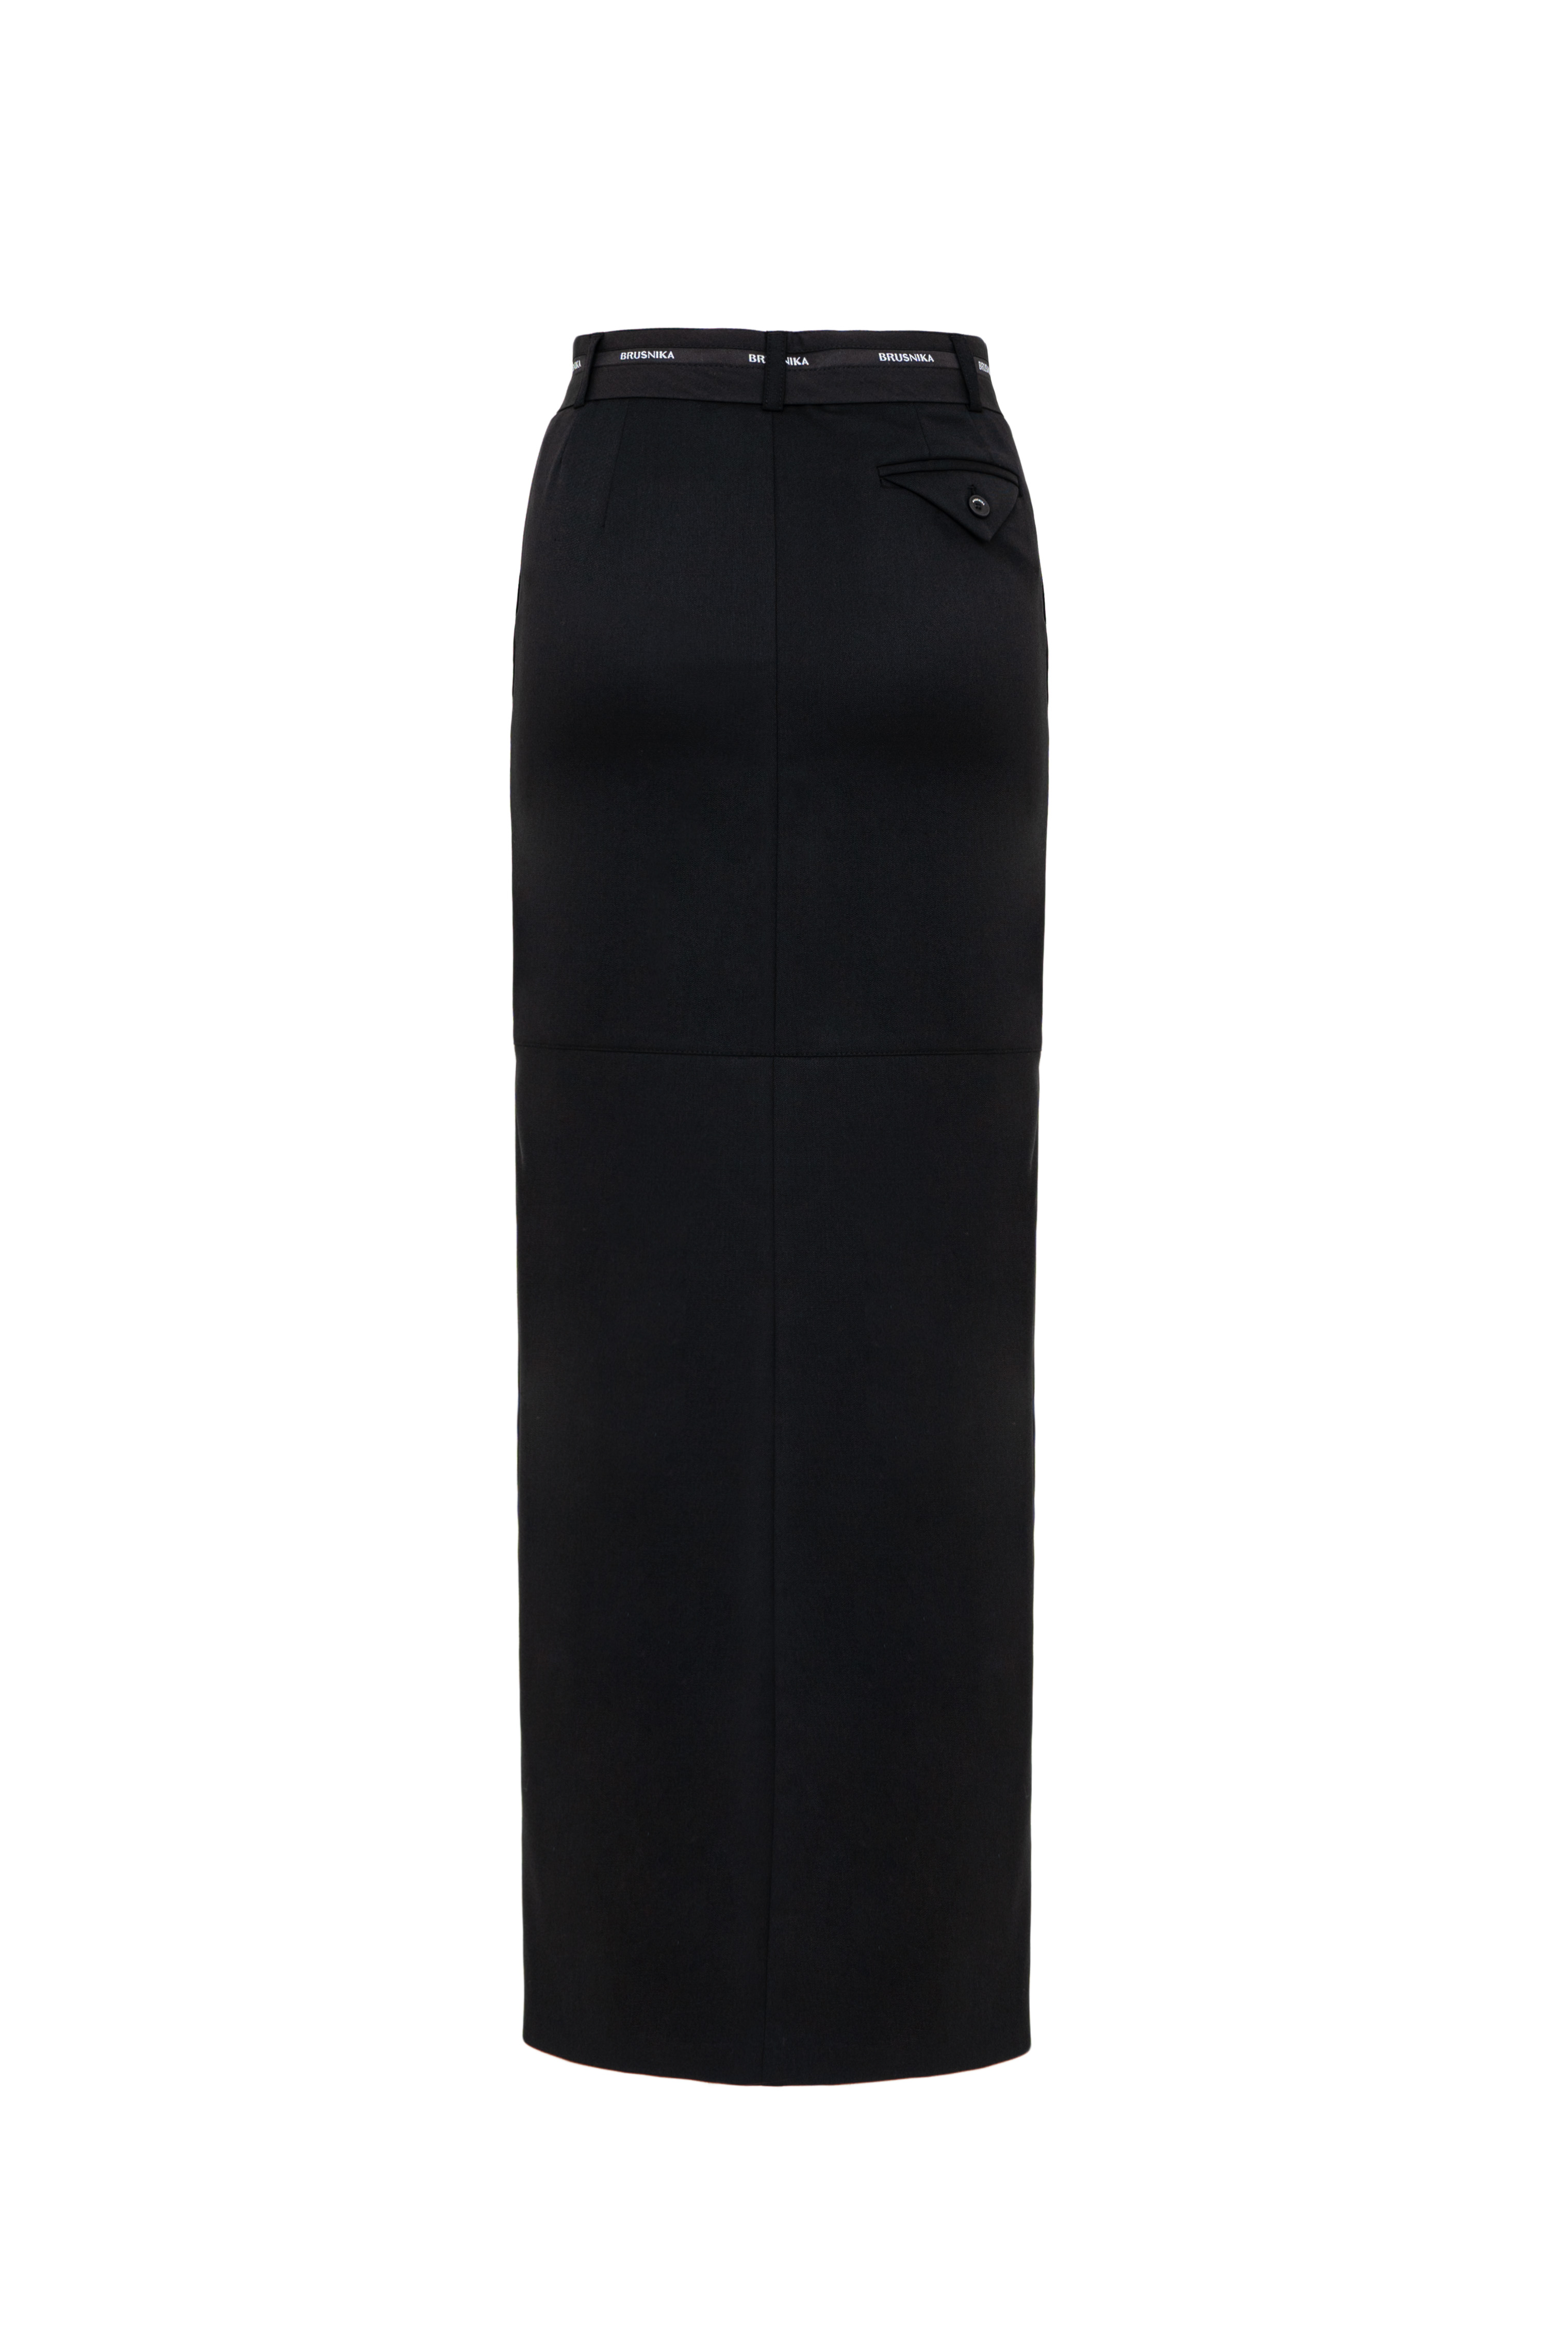 Skirt 4779-01 Black from BRUSNiKA